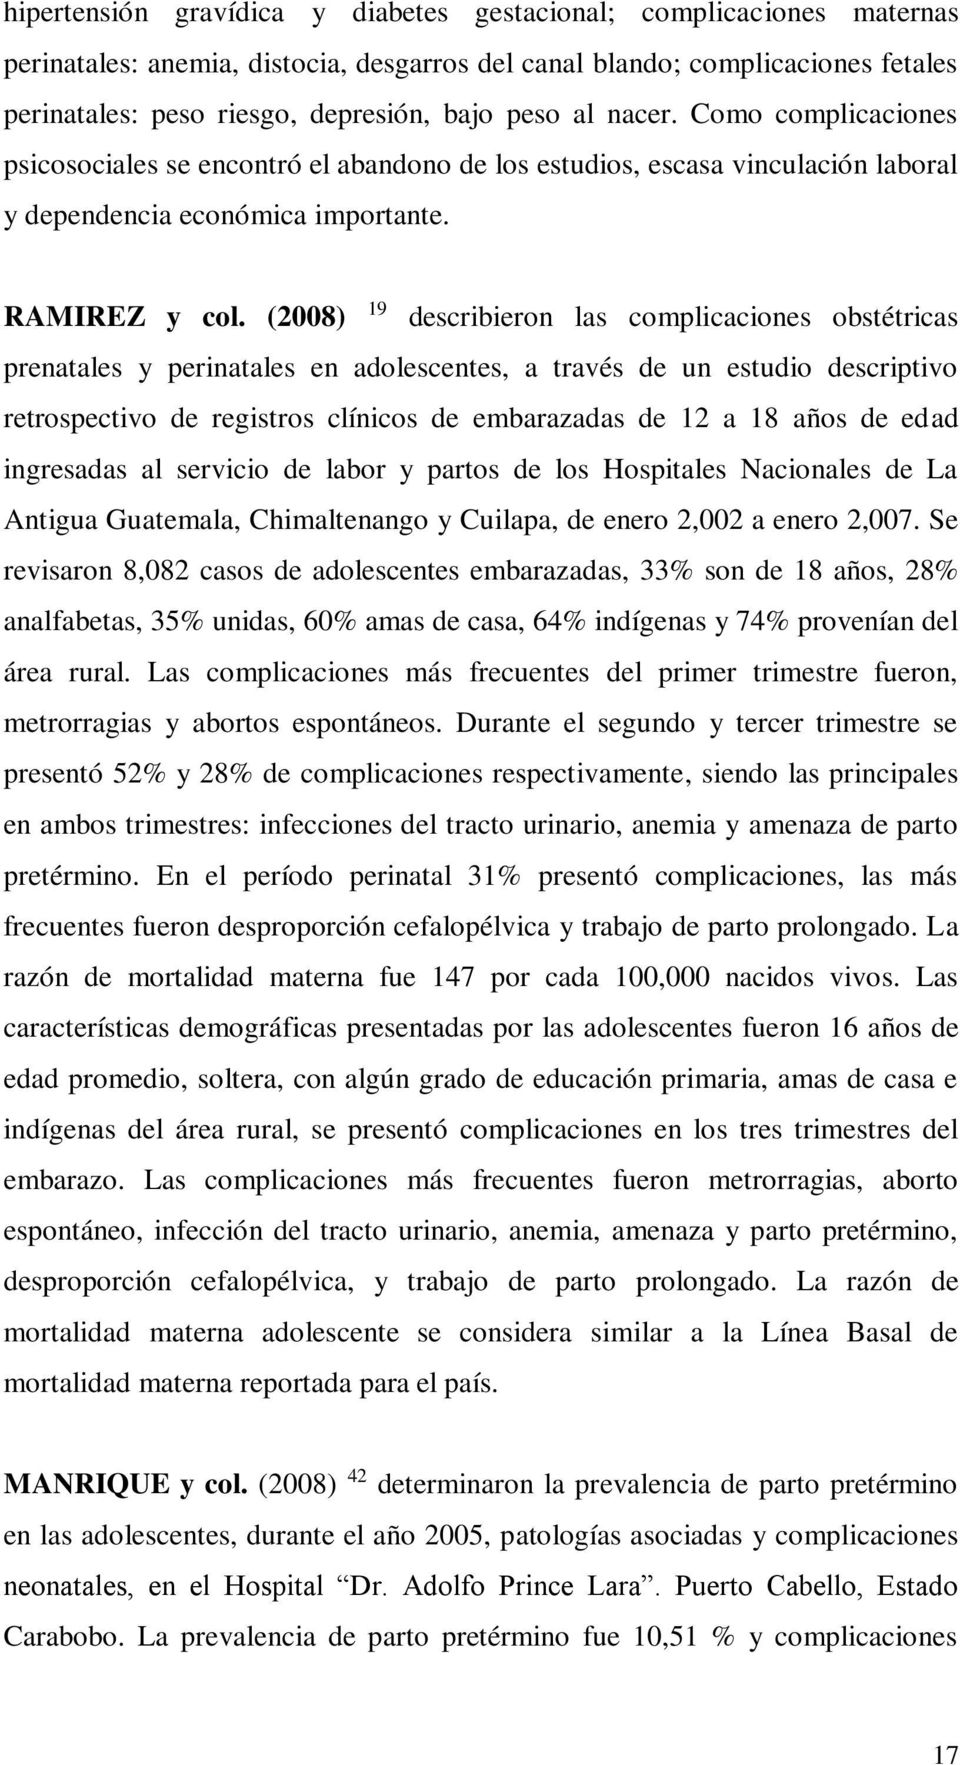 (2008) 19 describieron las complicaciones obstétricas prenatales y perinatales en adolescentes, a través de un estudio descriptivo retrospectivo de registros clínicos de embarazadas de 12 a 18 años